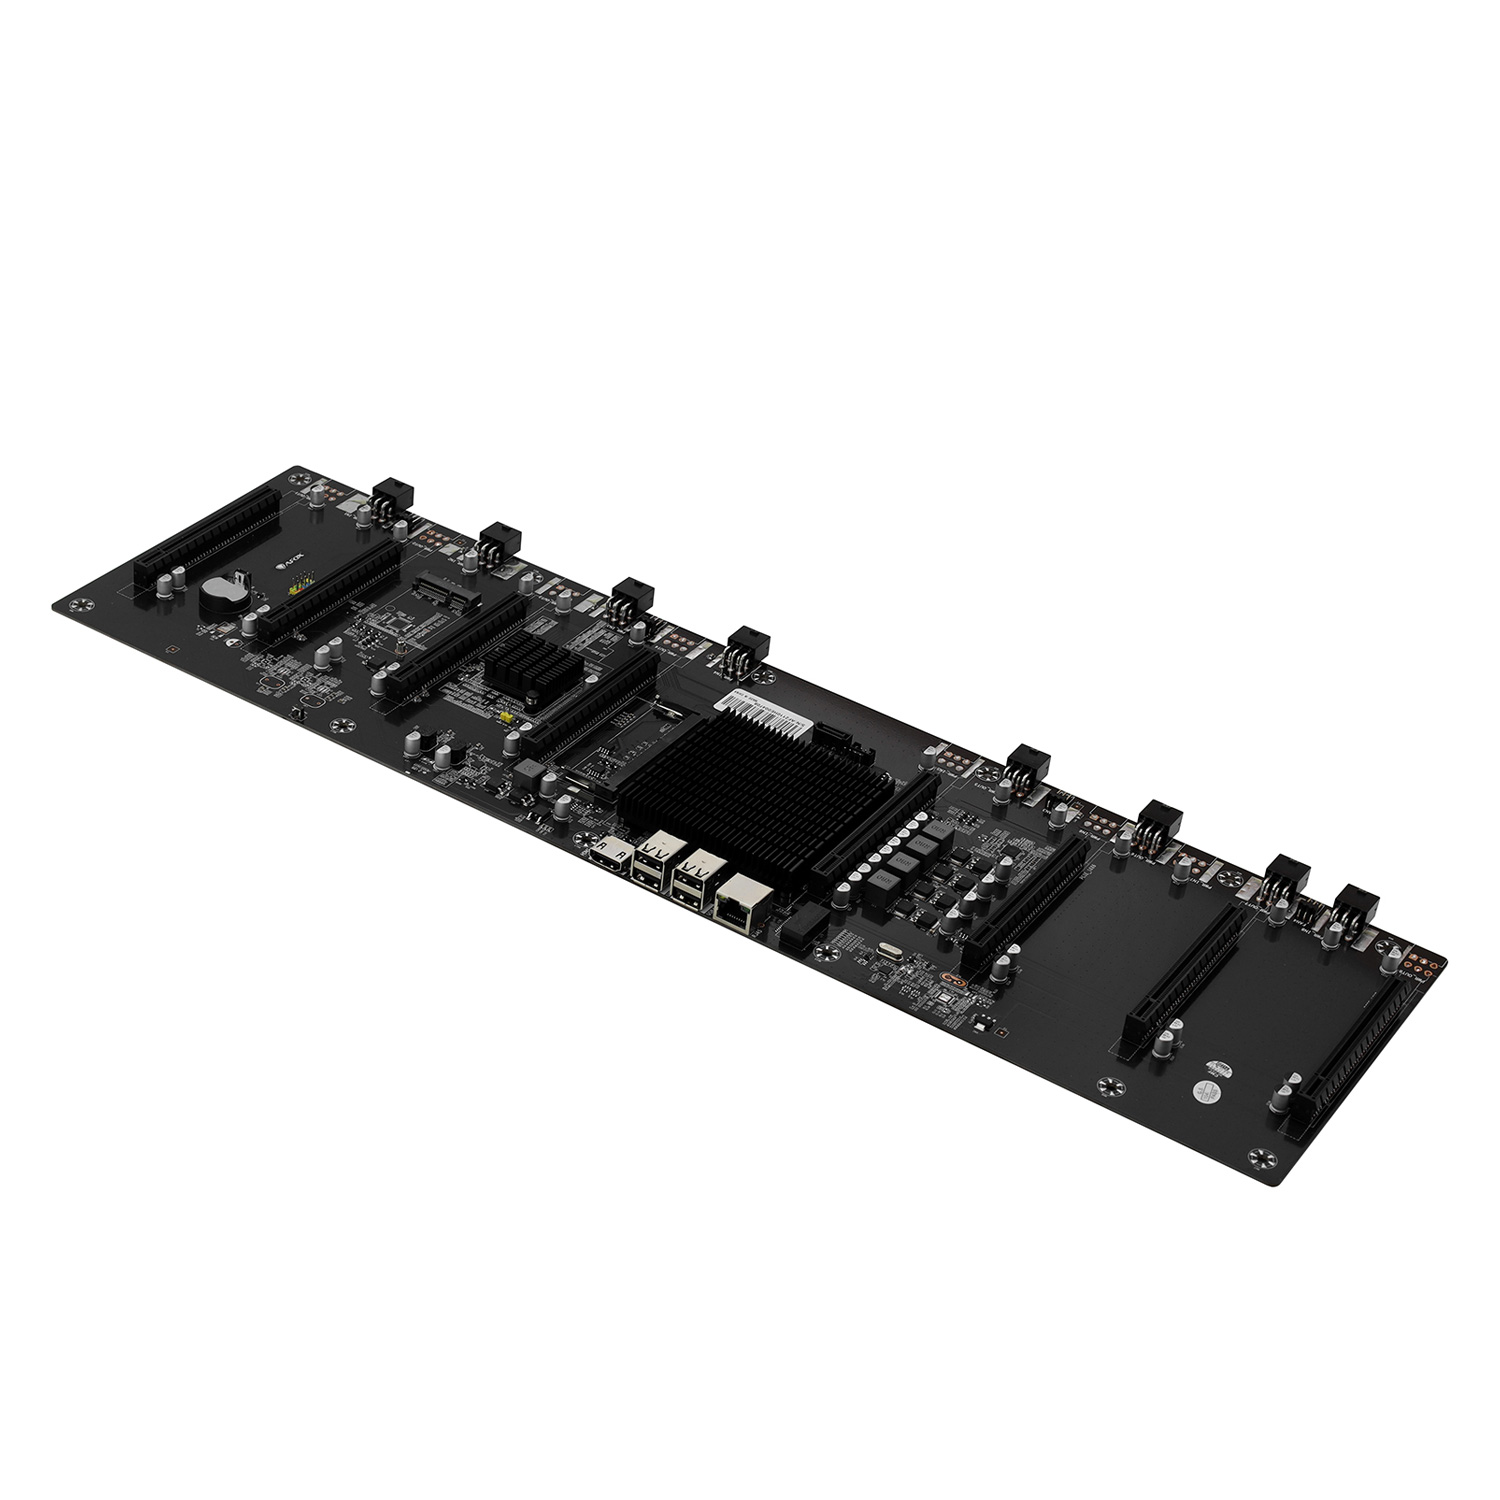 Placa Mãe Afox AFHM65-ETH8EX para Mineração / Chipset Intel HM65 / DDR3 / CPU Celeron / ATX